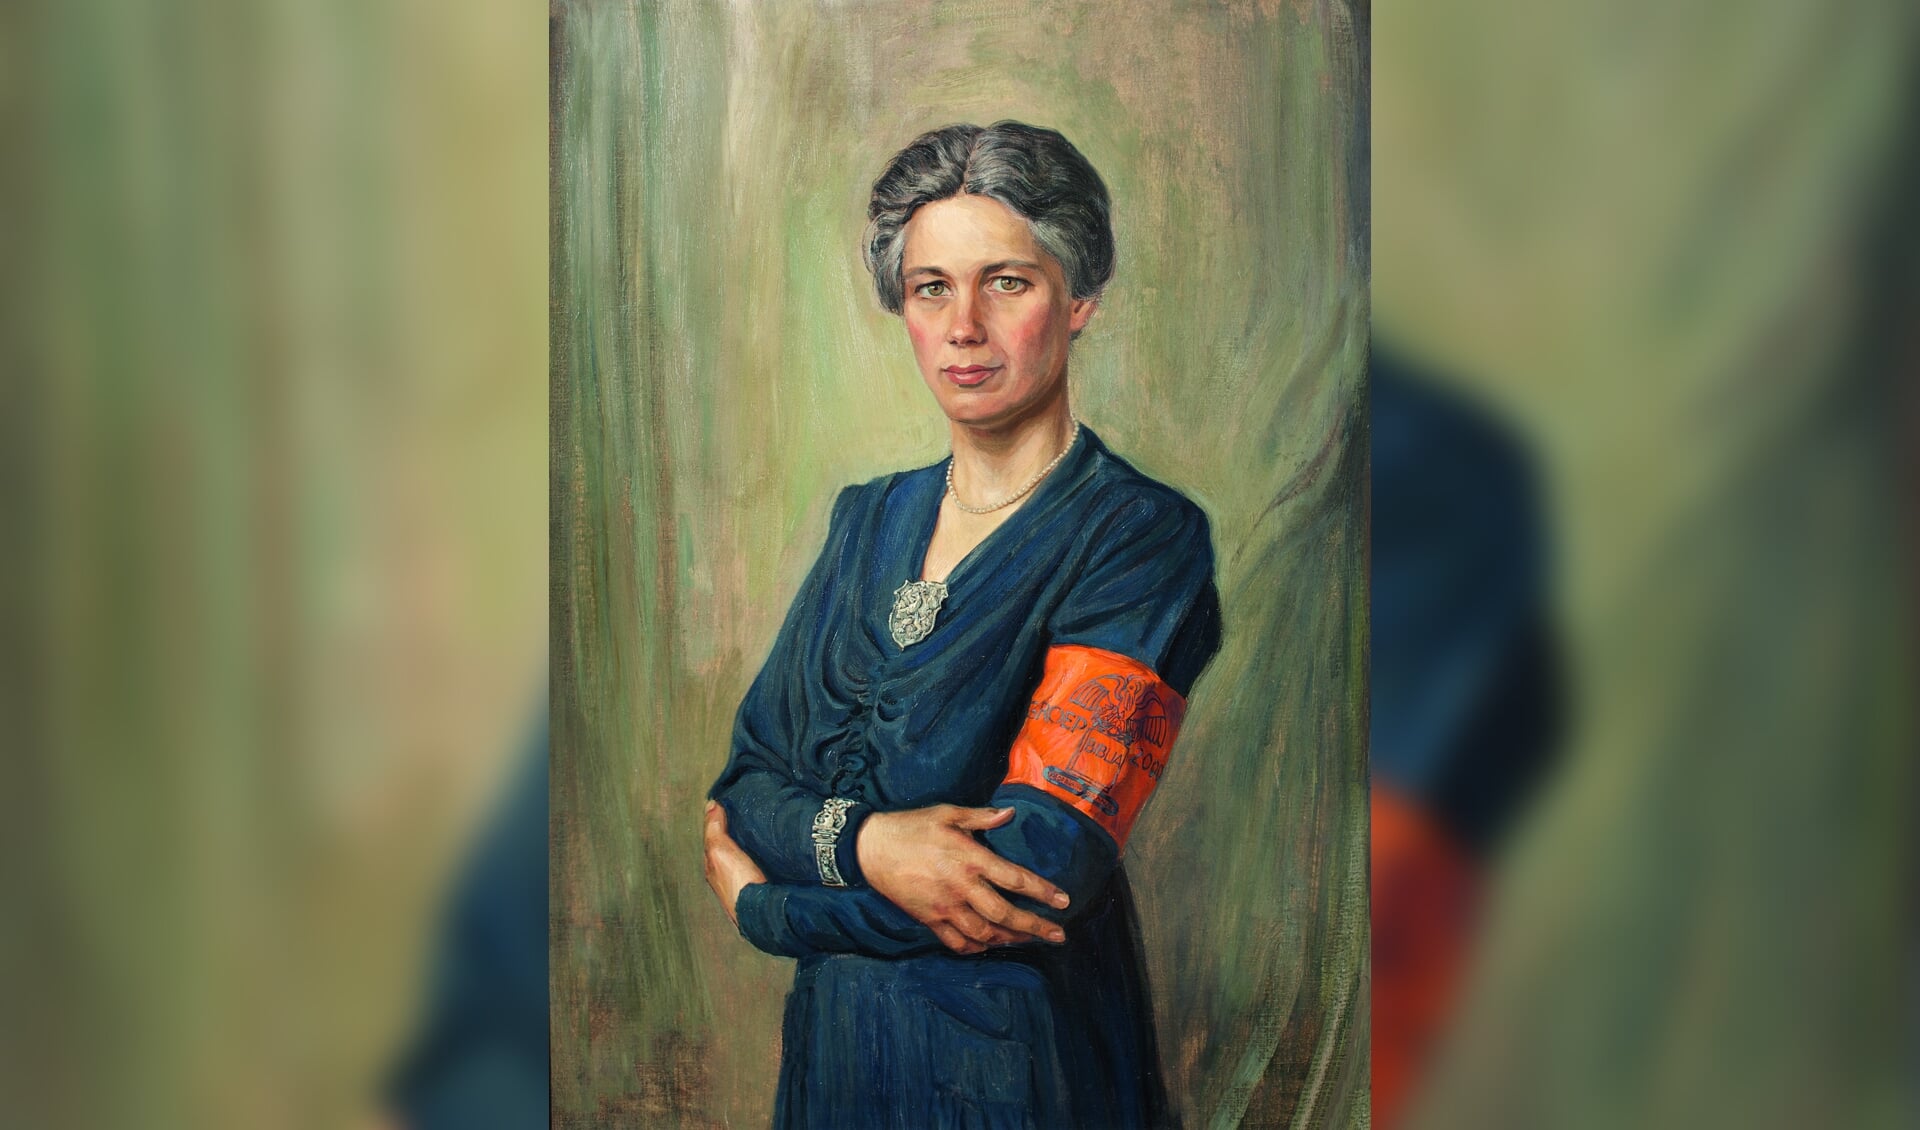 Jacoba van Tongeren was een sterke vrouw uit de Tweede Wereldoorlog die, met een onvoorstelbare moed en uithoudingsvermogen, een vitale rol speelde in het Amsterdamse verzet.